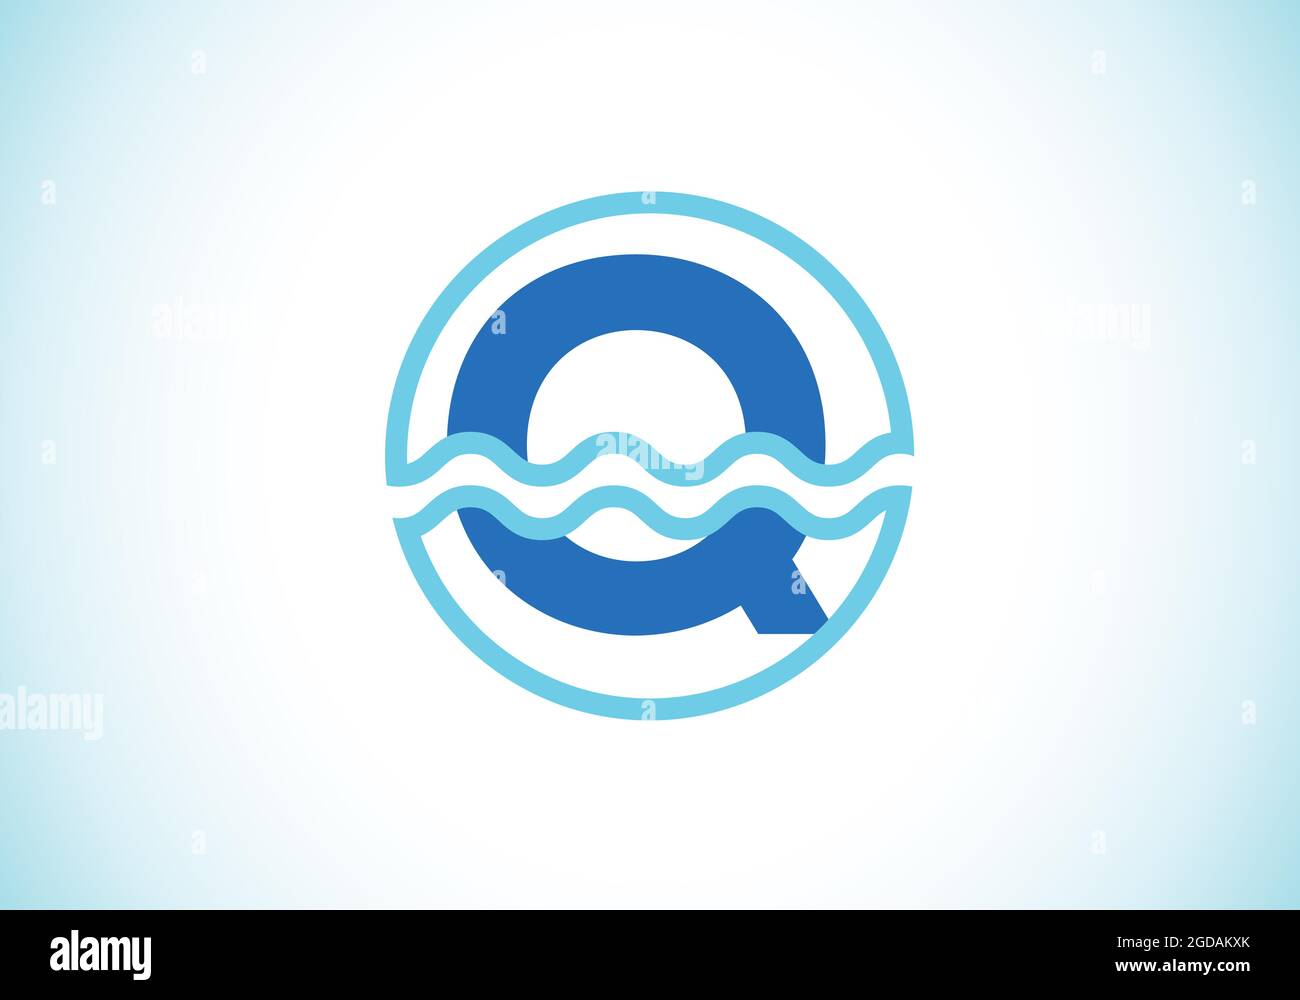 Anfängliches Q-Monogramm-Alphabet in einem Kreis mit Wasserwellen. Wasserwellen-Logo-Design. Logo für den Ozean, das Seegeschäft und die Unternehmensidentität Stock Vektor